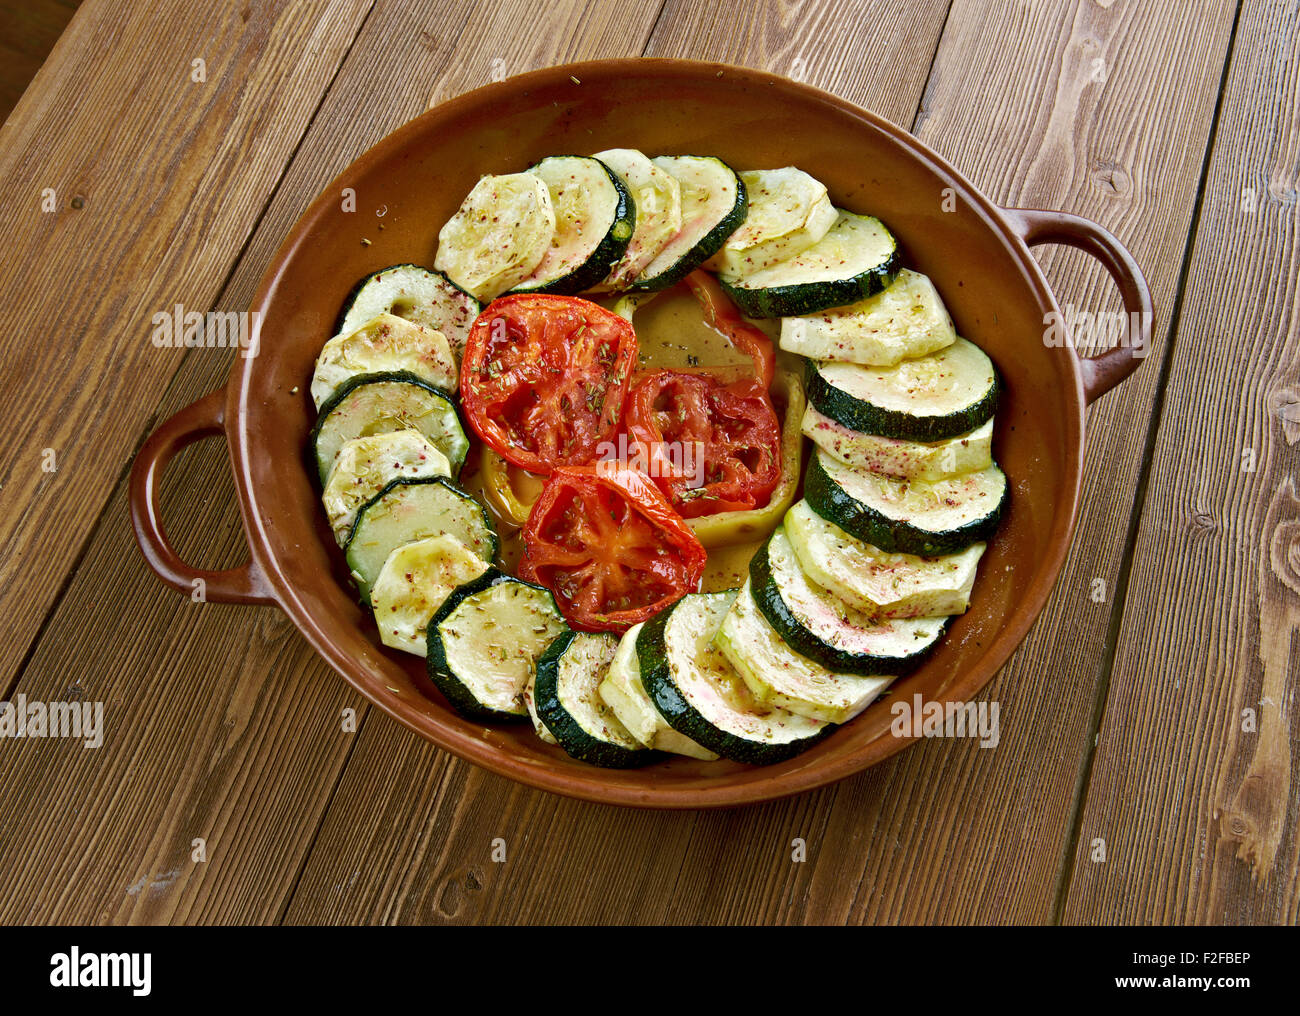 Fırında Kabak Dizme.Turkish cuisine Stock Photo